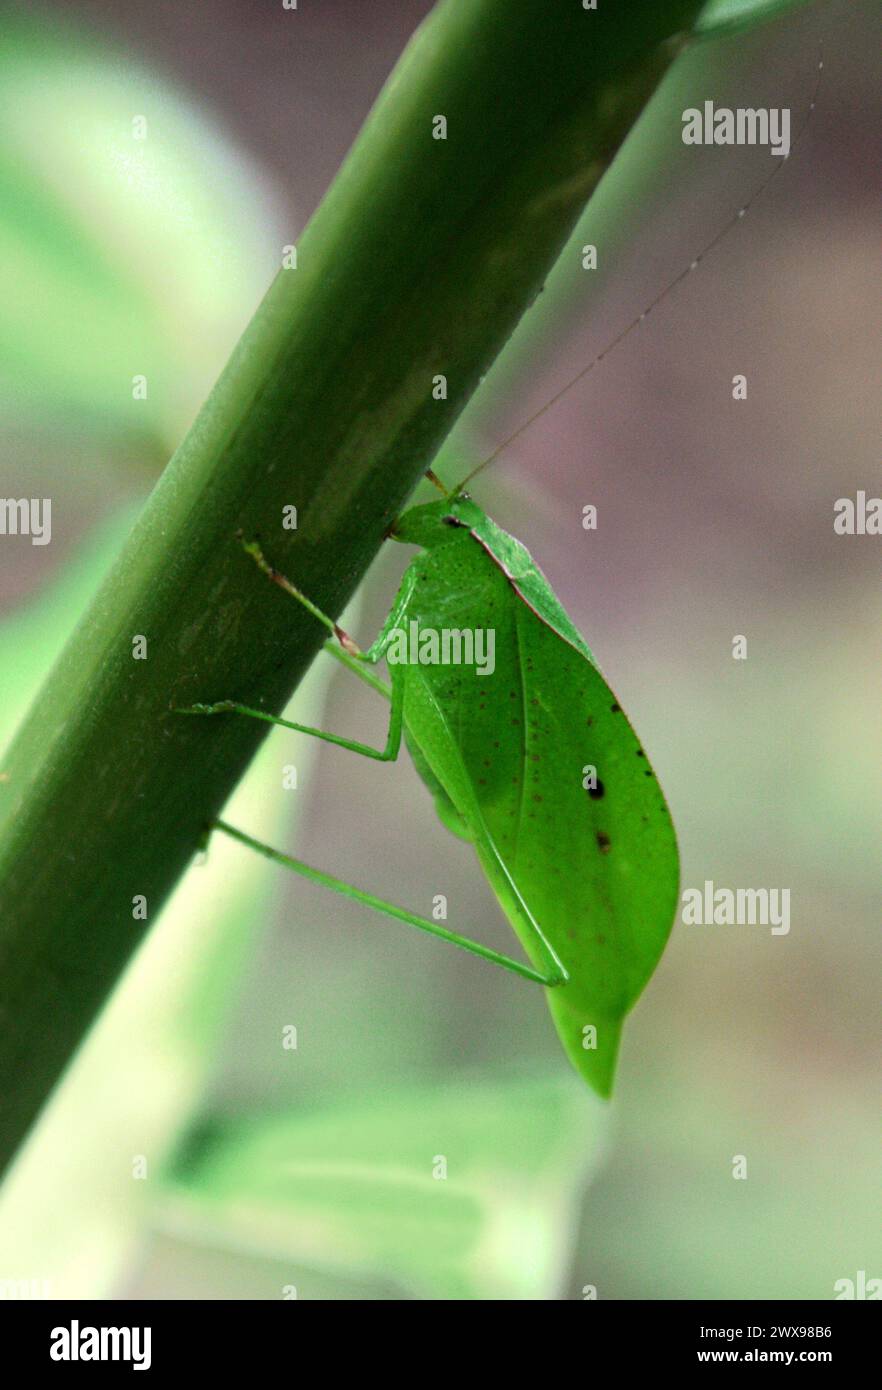 Blattmimimik, False Leaf Katydid, Orophus tessellatus, Tettigoniidae, Orthoptera. Costa Rica. Sie stammt aus Mexiko, Mittelamerika und Südamerika. Insek Stockfoto